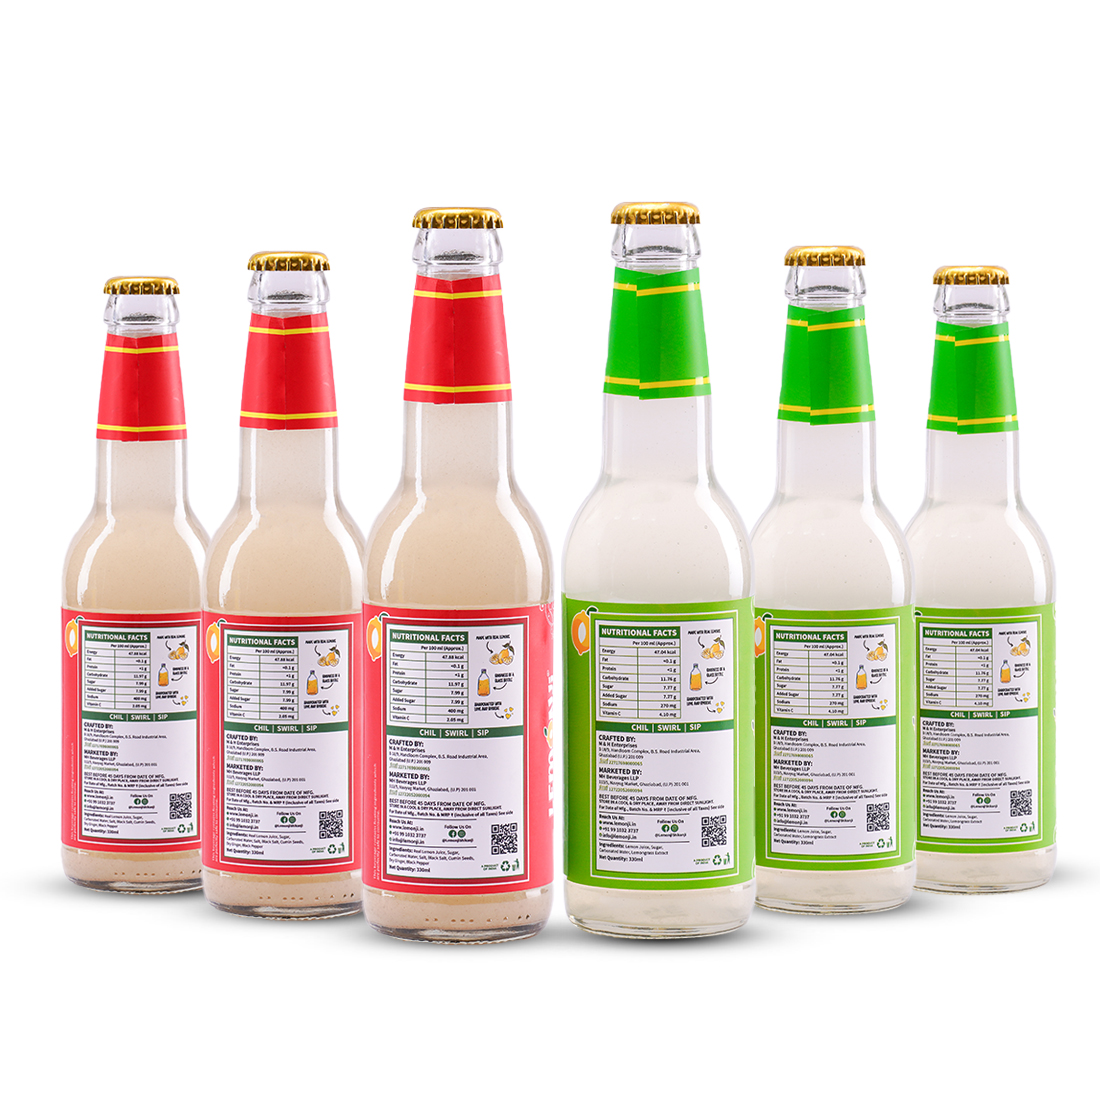 Lemonji Assorted 6 Bottles Pack (3MBL-3SL)